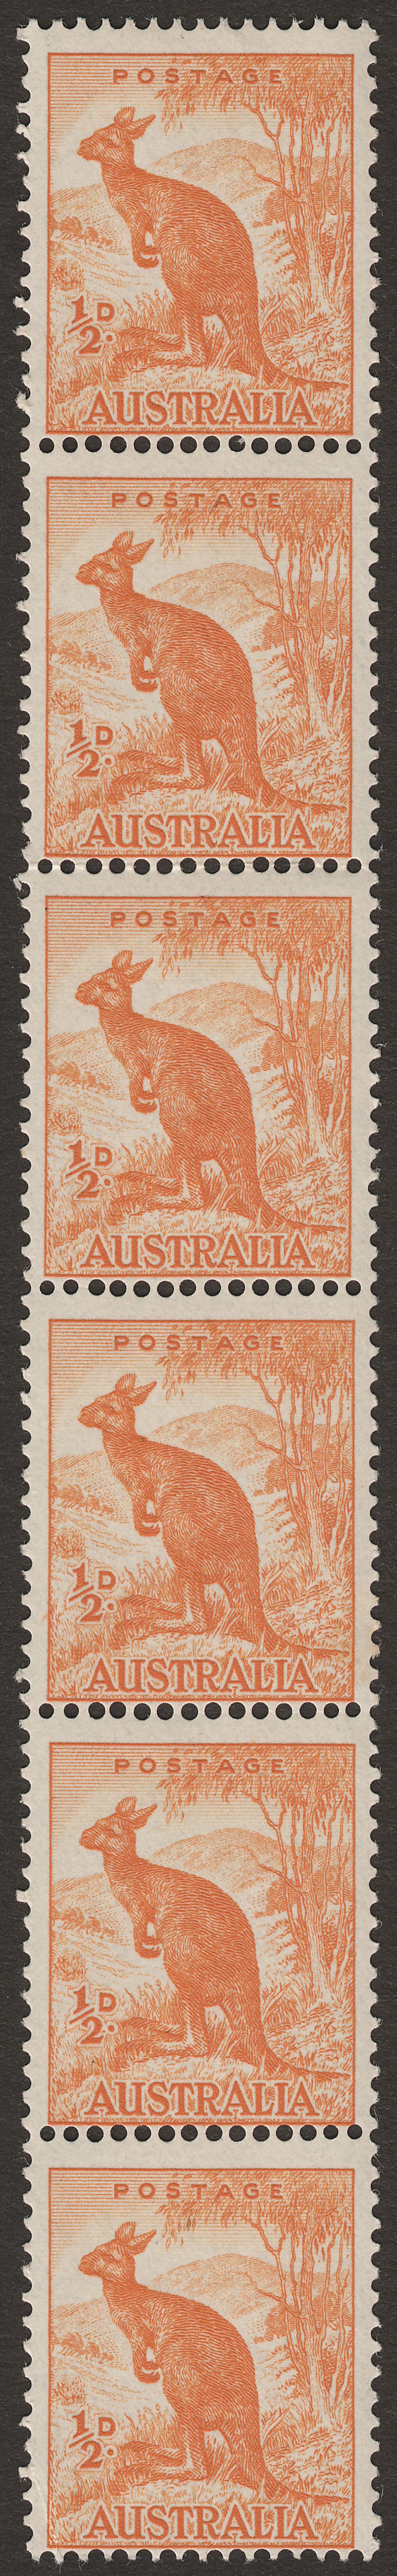 Australia 1949 Kangeroo ½d coil perf strip of 6 Mint SG228c